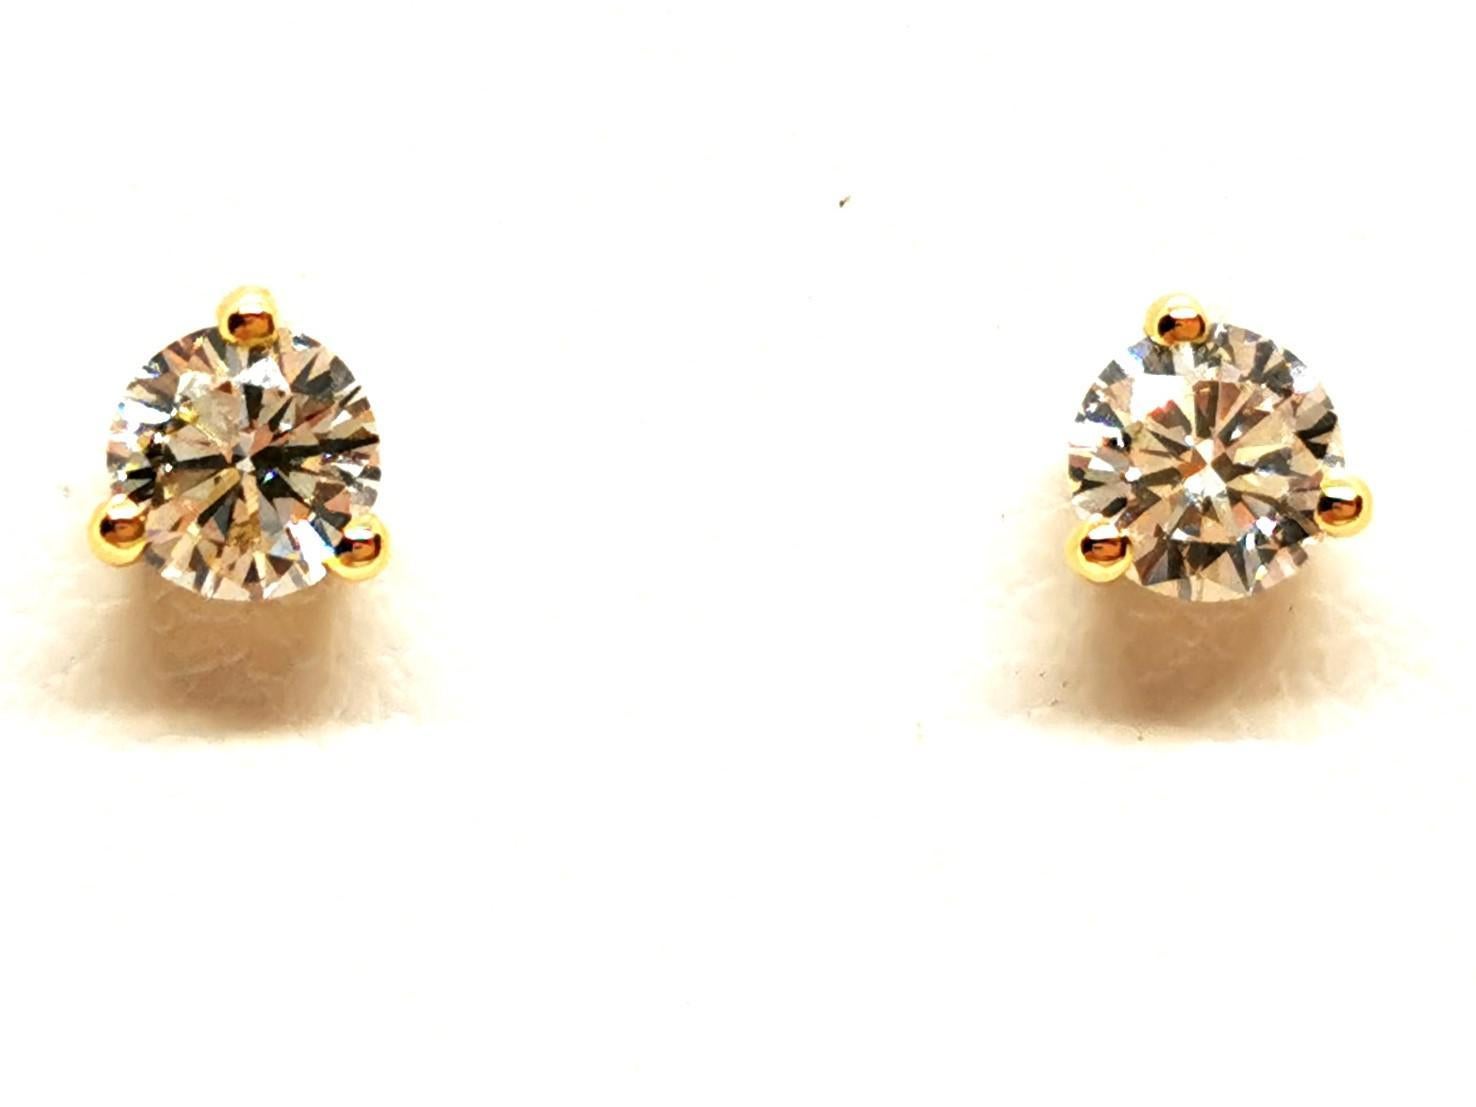 Ohrringe Diamant-Chips. in Gelbgold 750 Tausendstel (18 Karat). mit zwei Diamanten besetzt. Brillantschliff. ca. 0,21 ct pro Stück. Gesamtgewicht Diamanten: ca. 0,42 ct. in 3 Krallen gefasst. Durchmesser: 0,43 cm x 0,43 cm. Alpa-Verschluss.